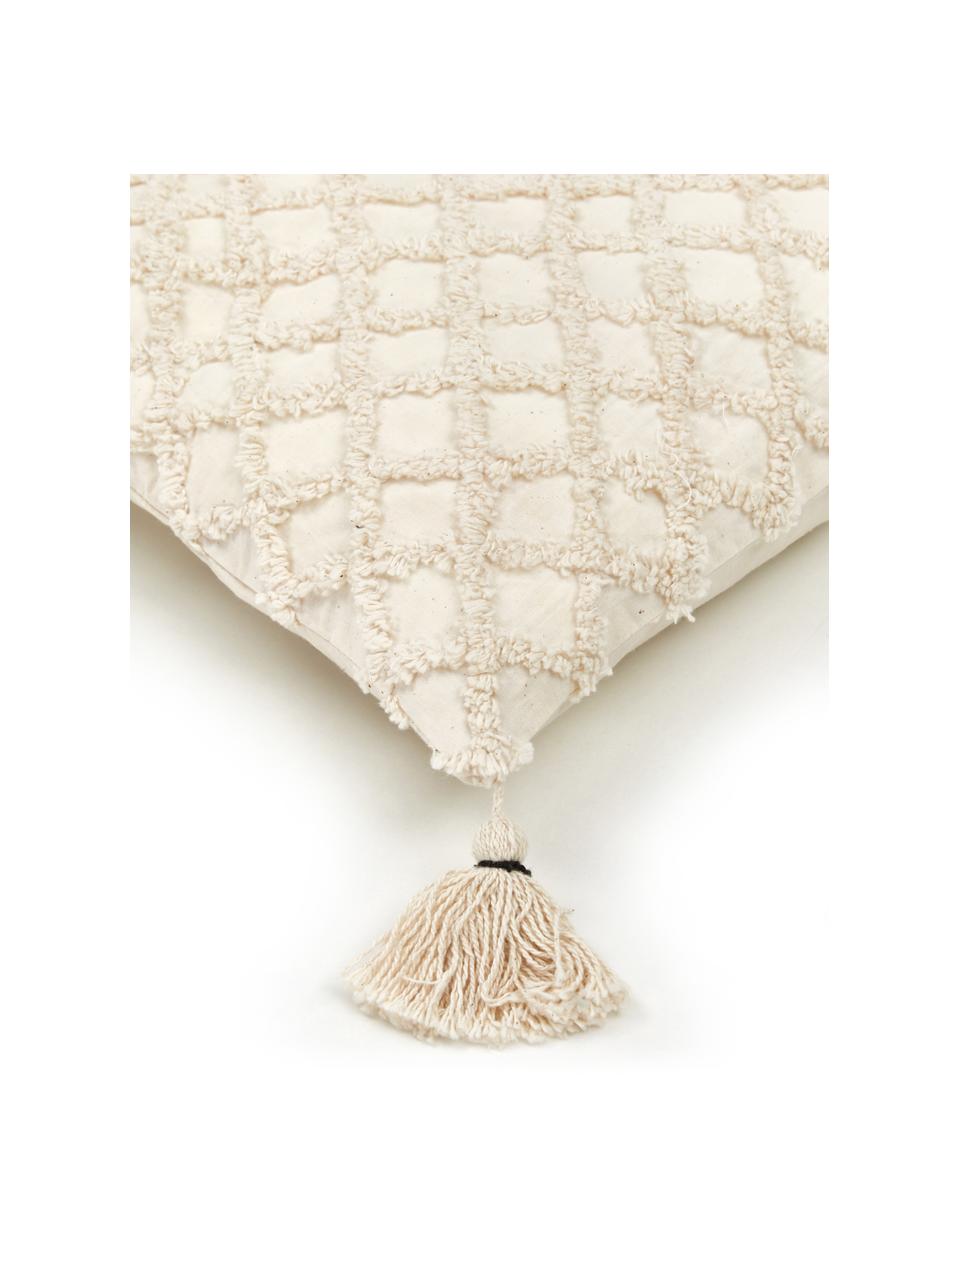 Kissenhülle Royal mit Hoch-Tief-Muster, 100% Baumwolle, Gebrochenes Weiß, B 30 x L 60 cm